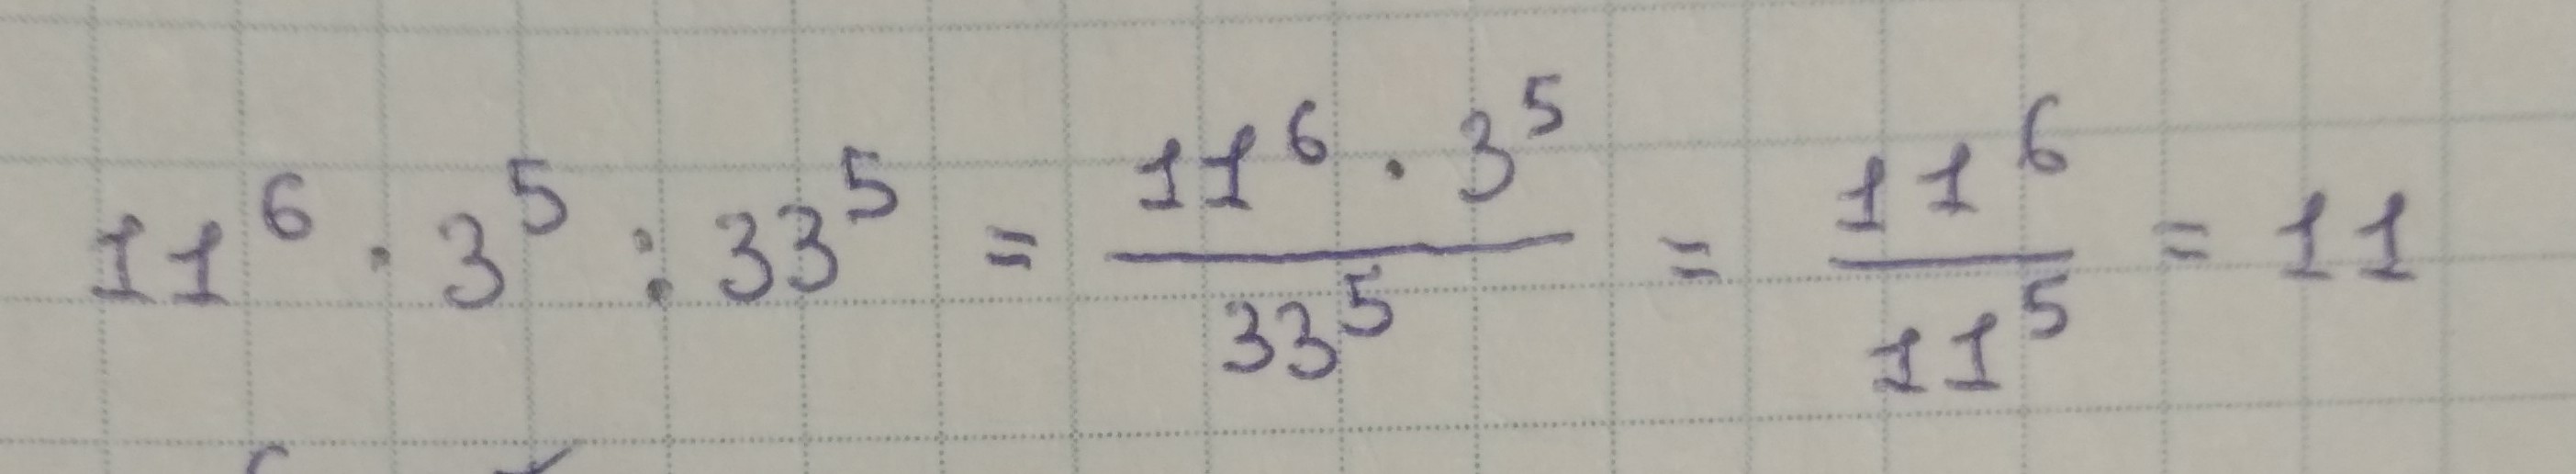 27 разделить на 60. 3 В 5 степени. 2 В степени 3 5 умножить на 3 в степени 5.5 разделить на 6 в степени 4.5.